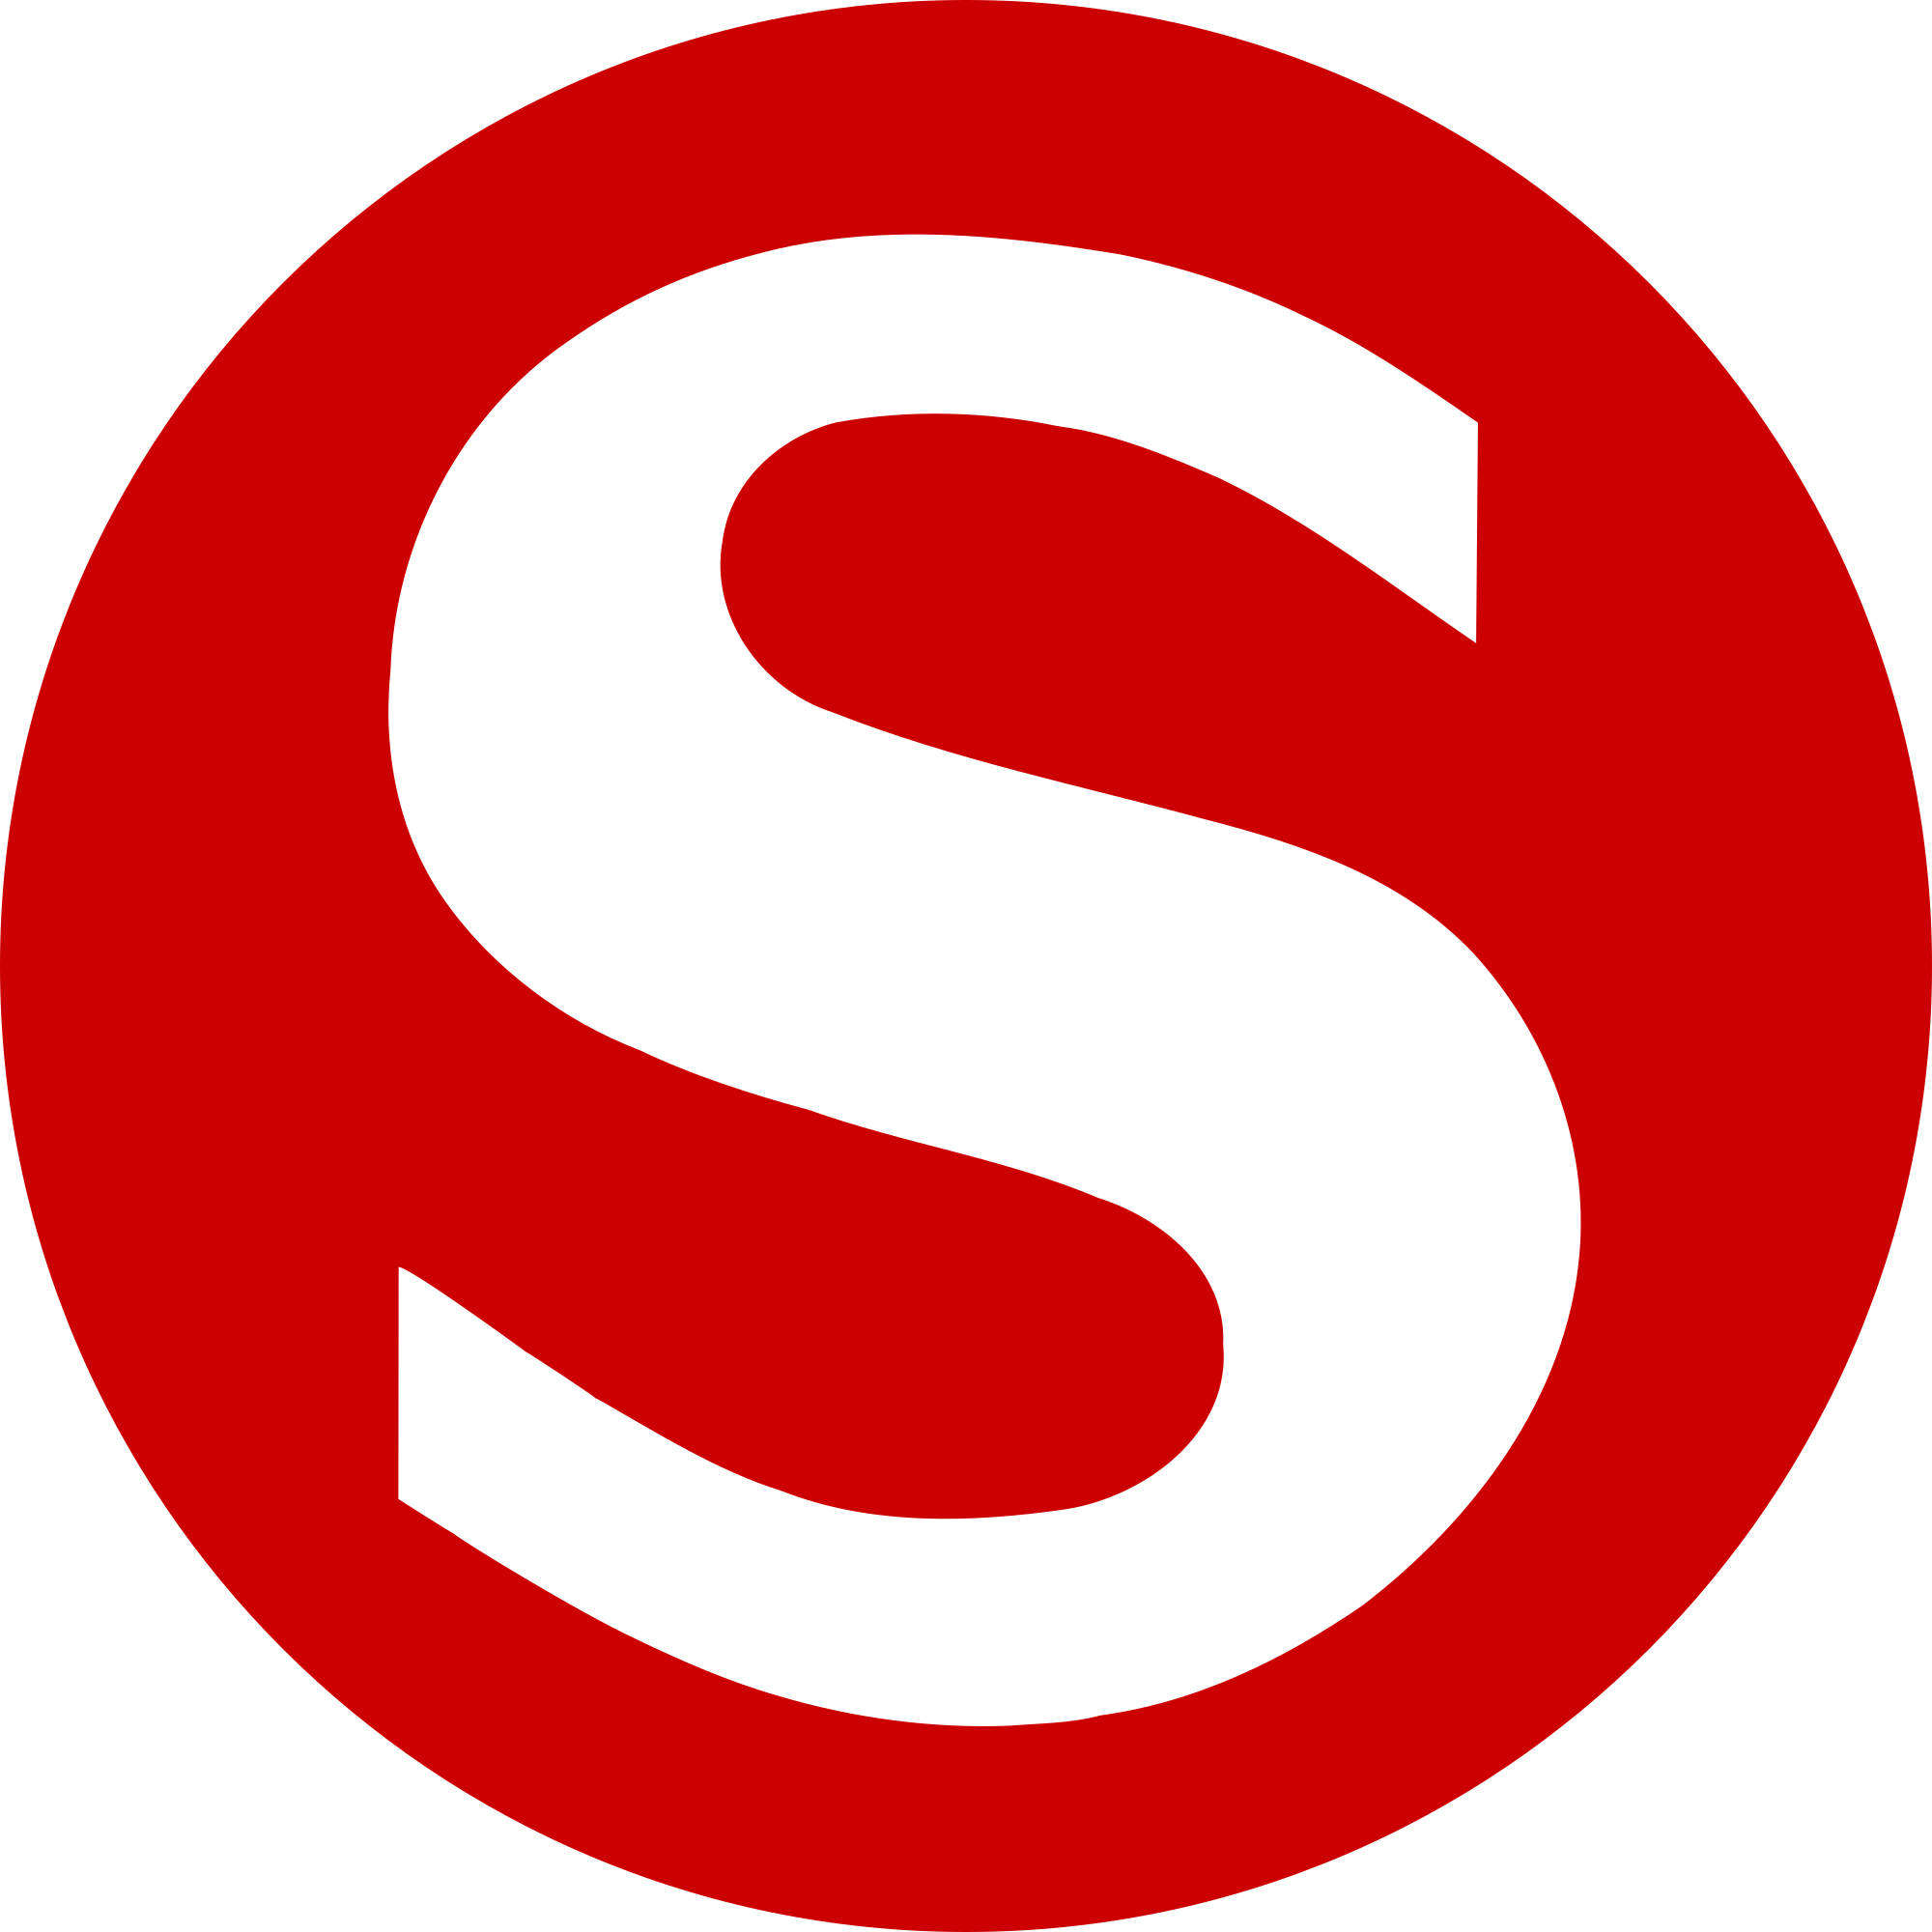 Red S Logo - File:S-Bahn-Logo rot.svg - Wikimedia Commons